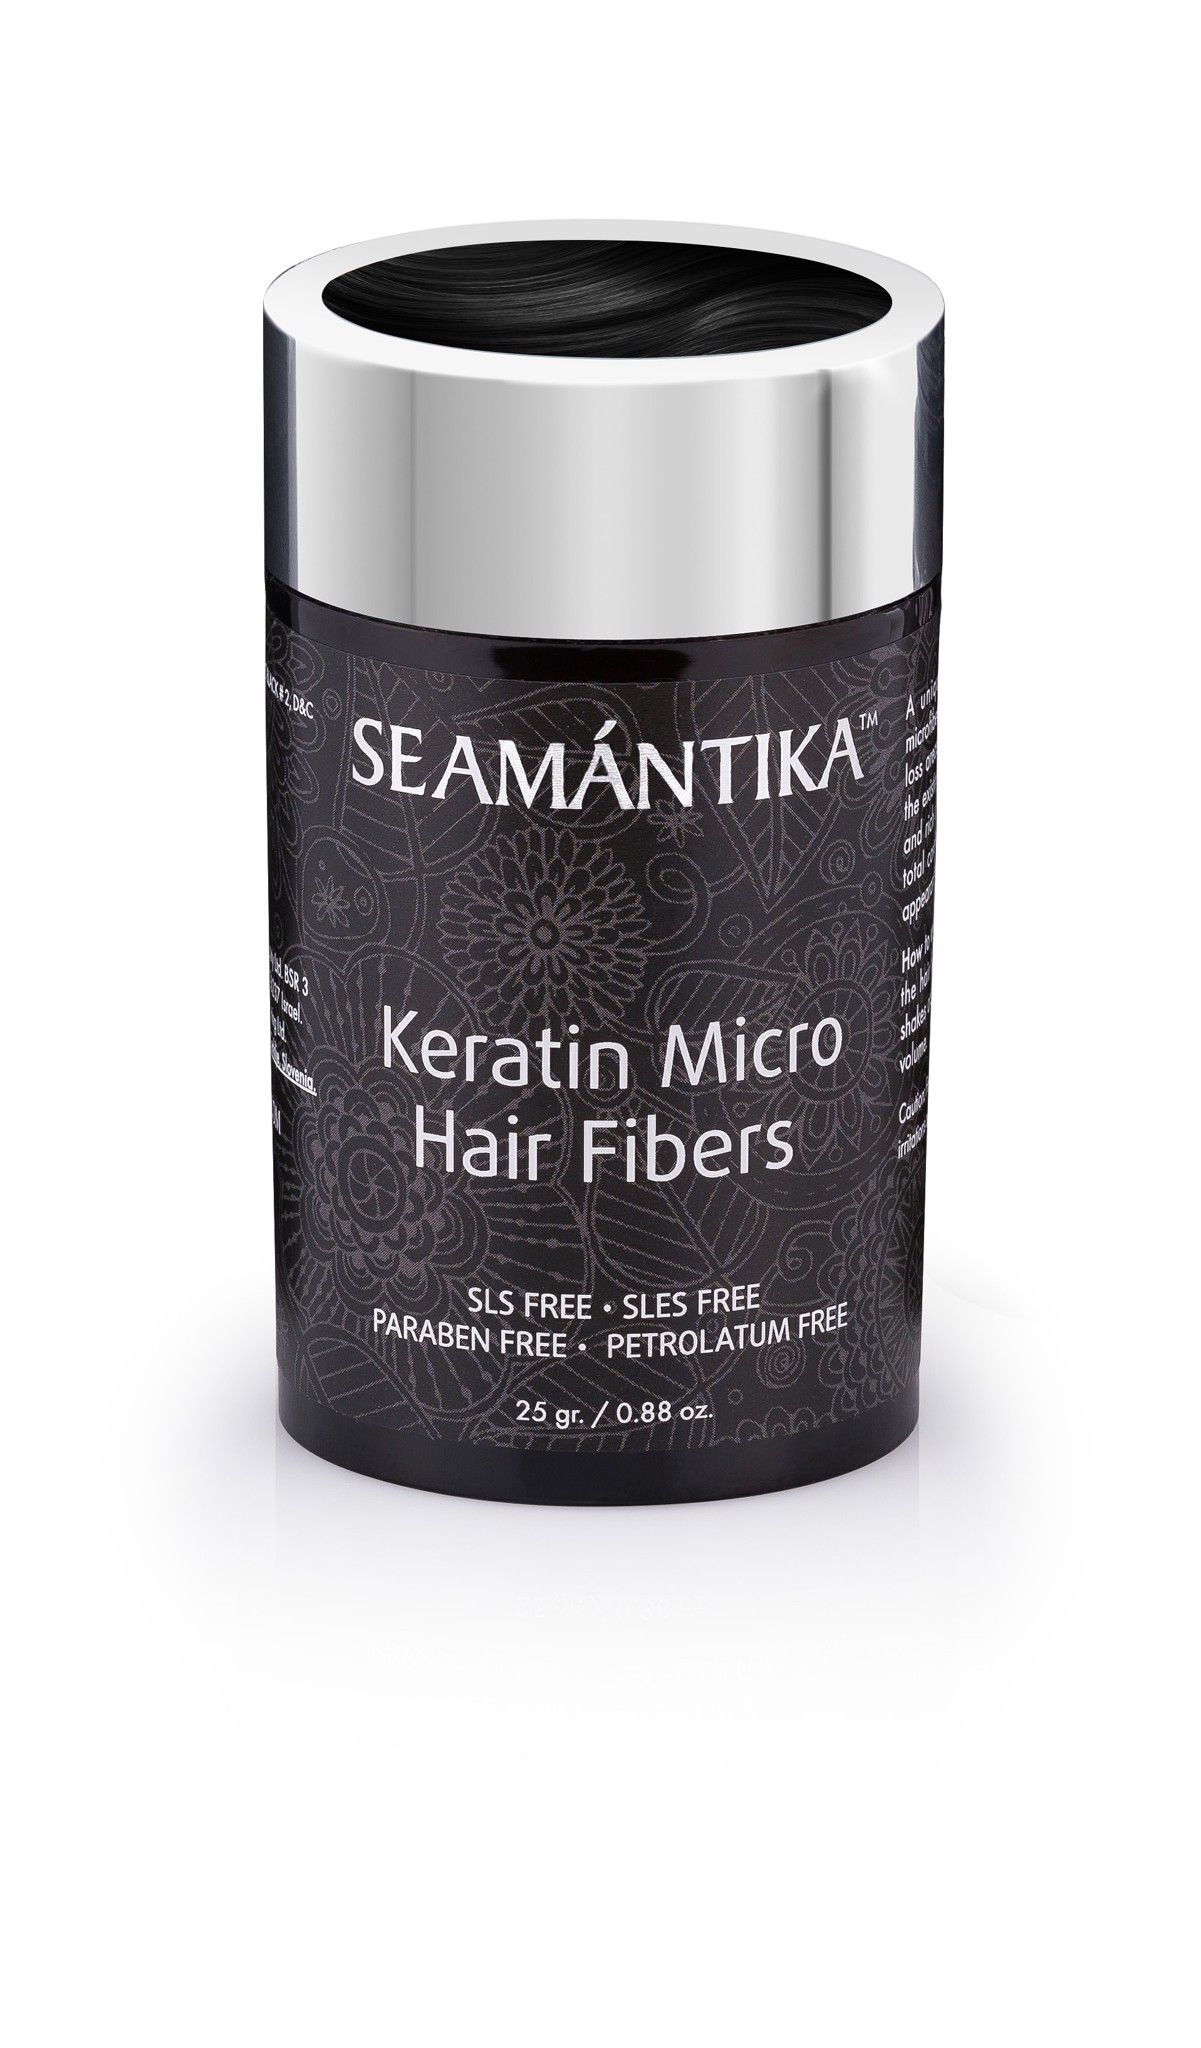  Sợi Keratin Siêu Nhỏ - Tóc Đen - Dành cho mái tóc mỏng - KERATIN MICRO HAIR FIBERS - BLACK 